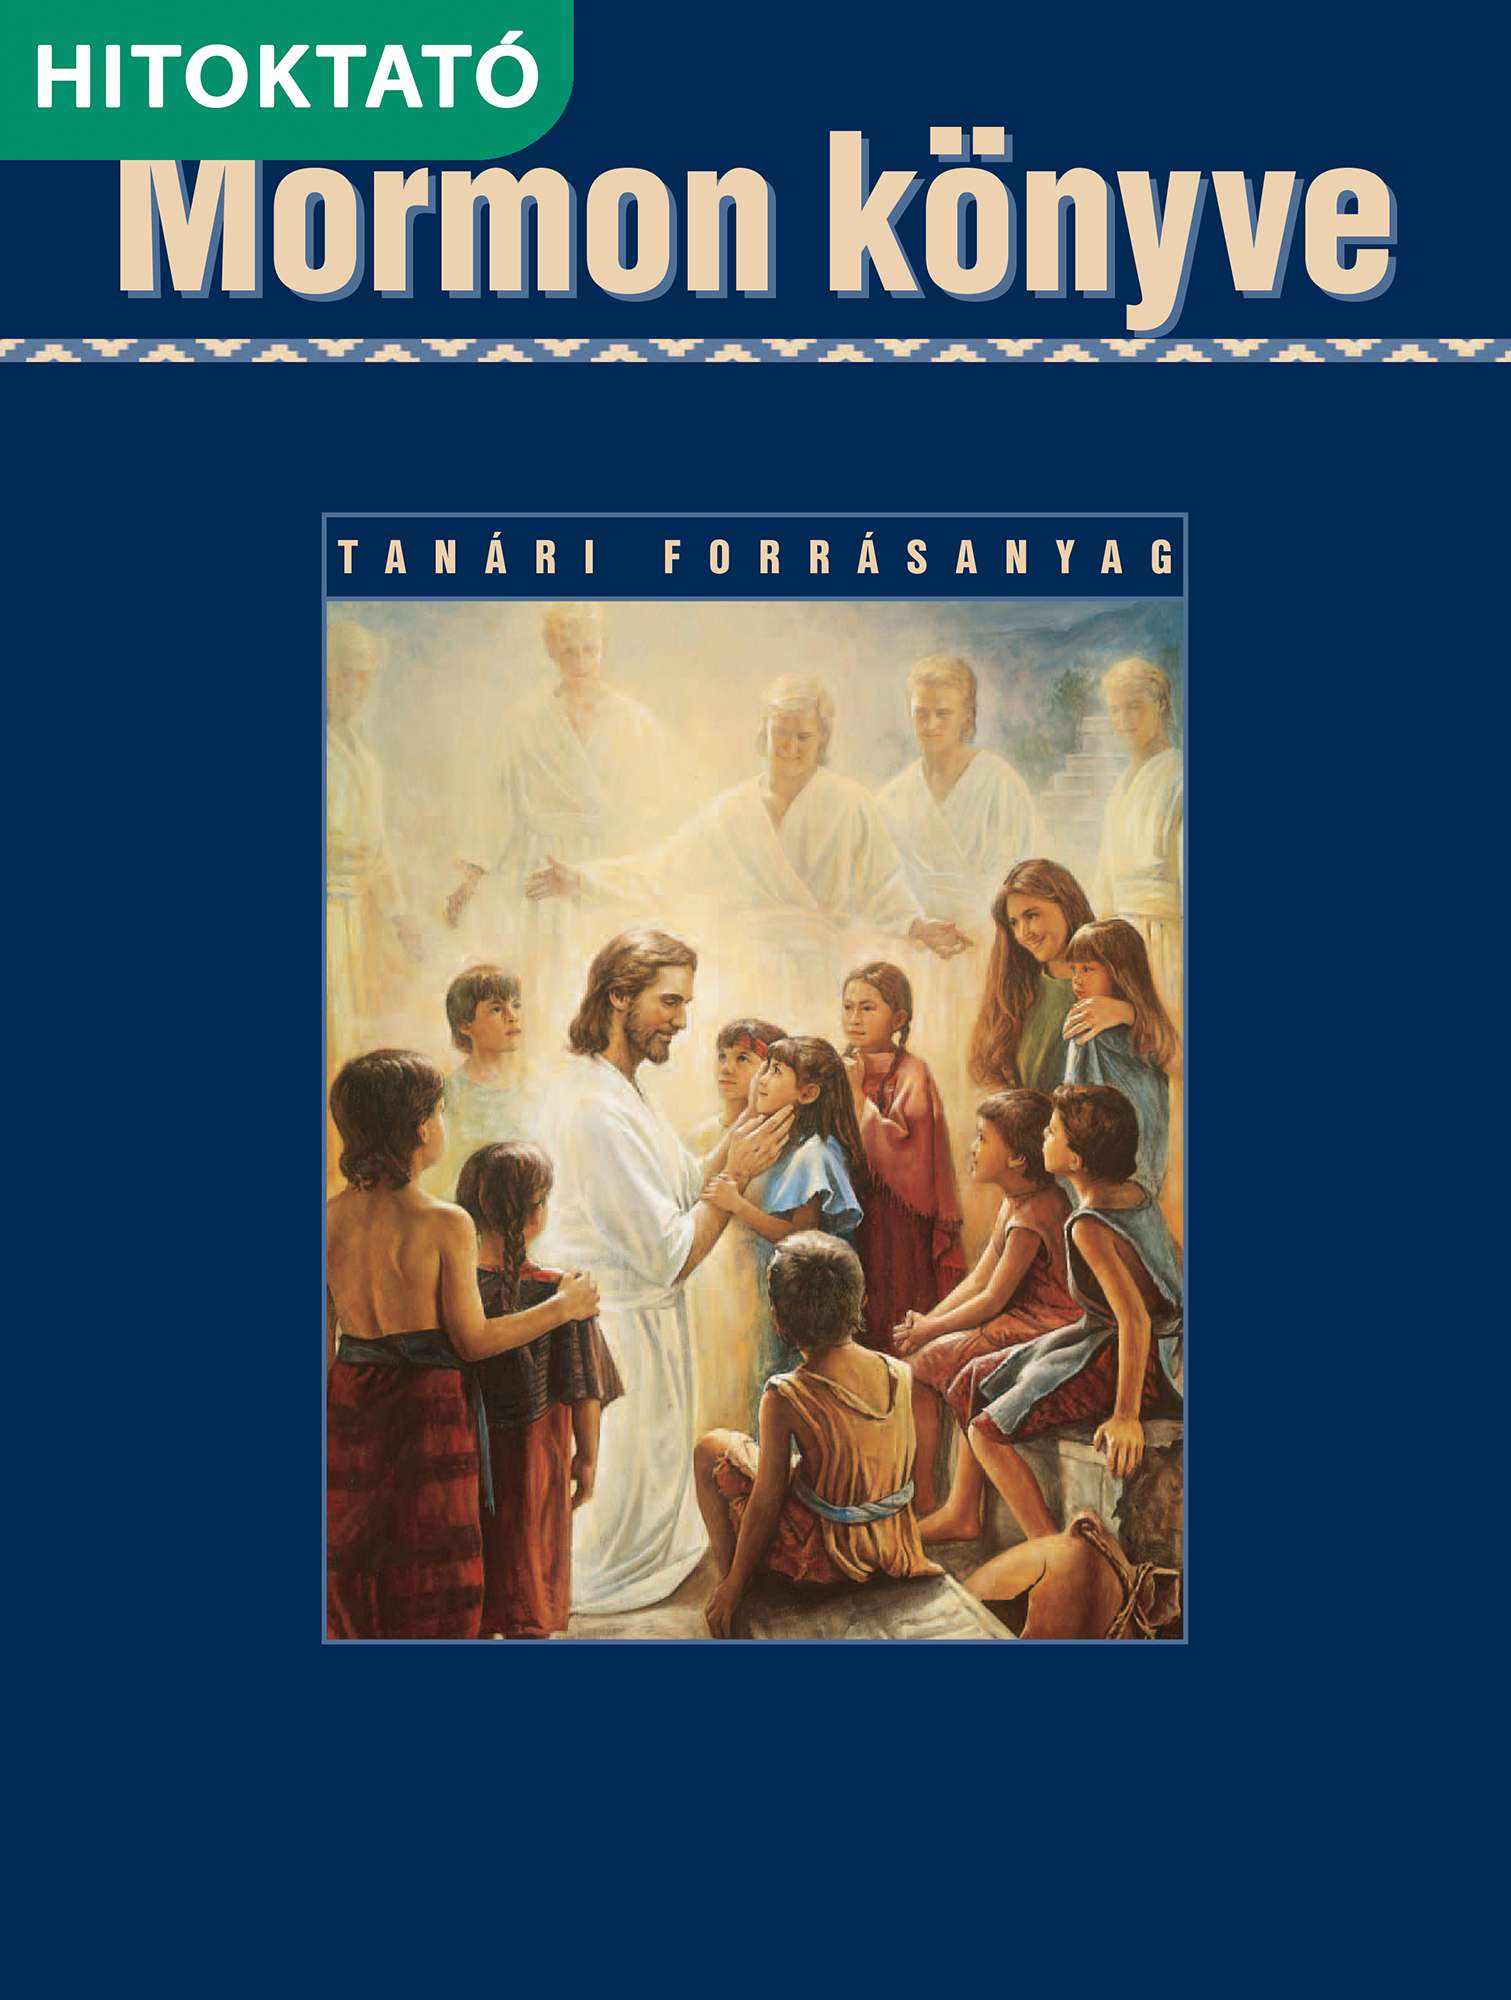 Mormon könyve ifjúsági hitoktatói kézikönyv